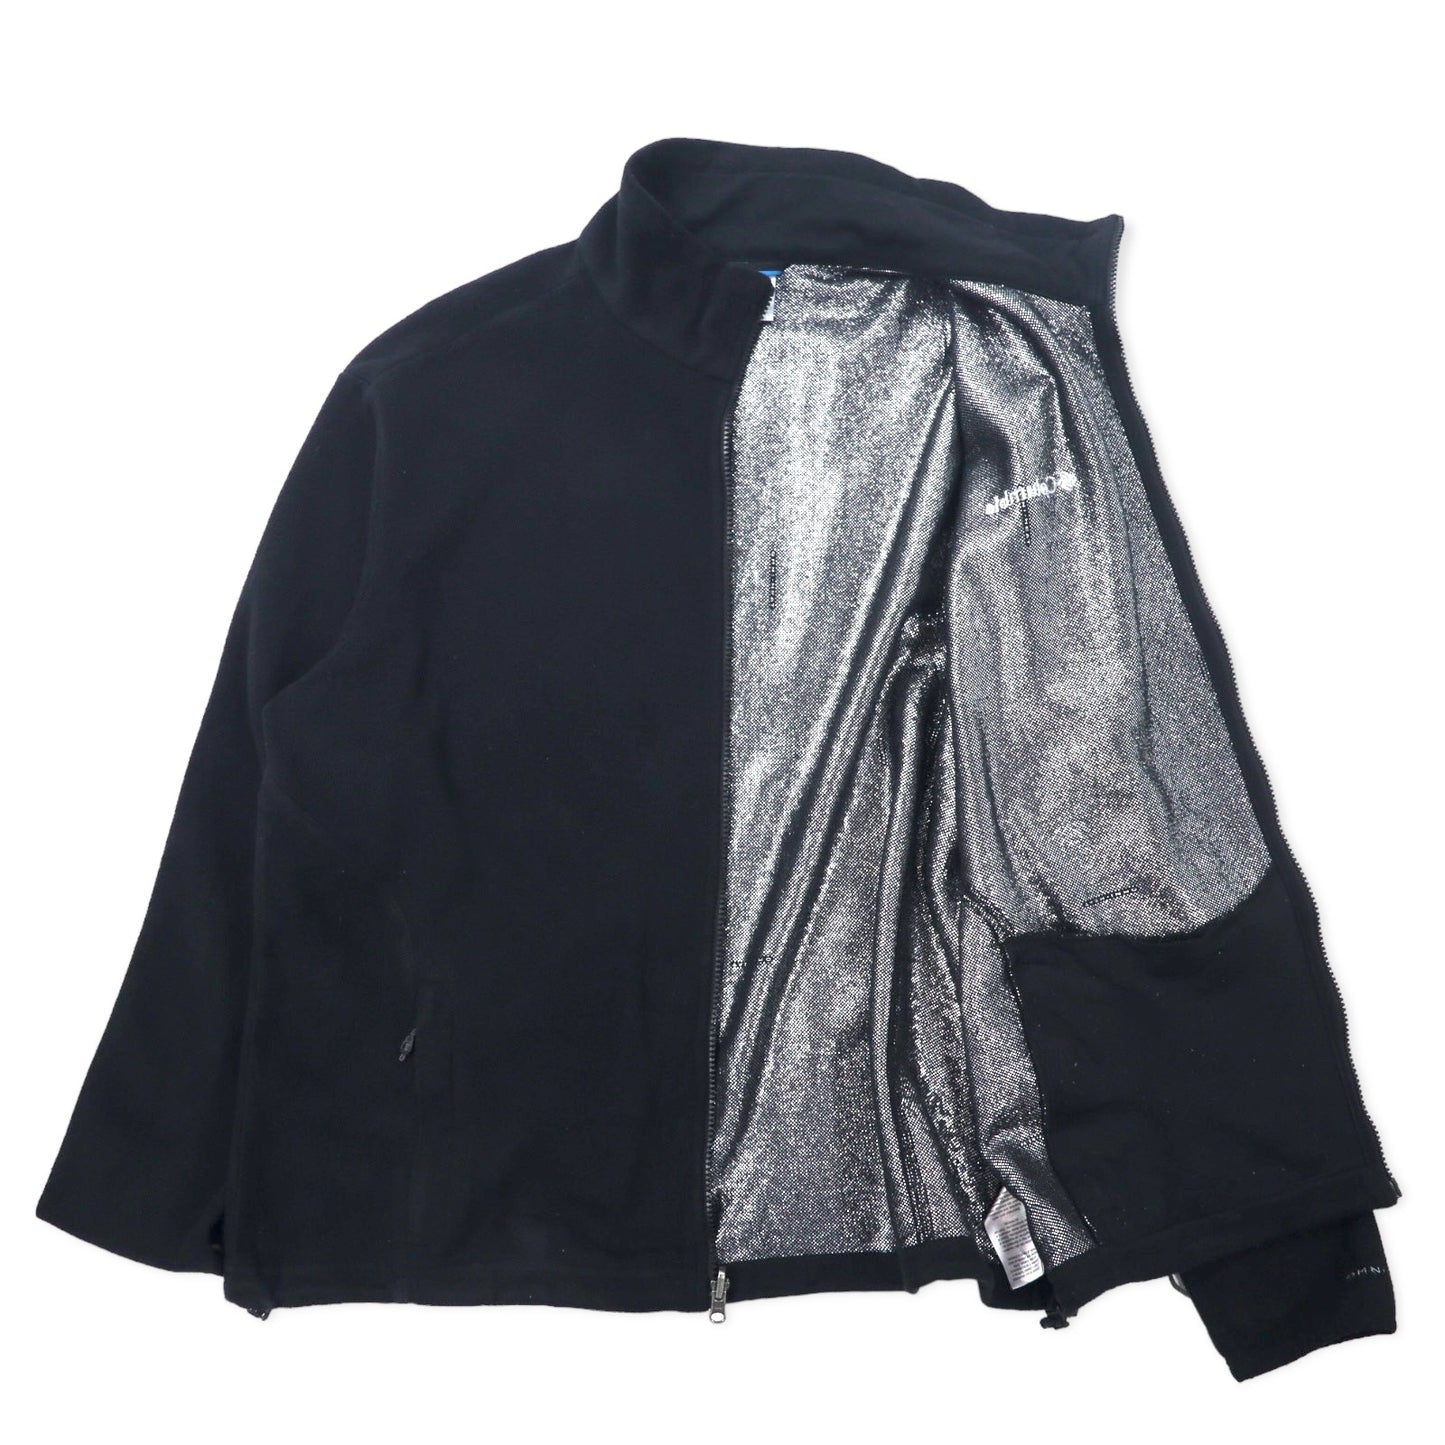 Columbia INTERCHANGE OMNI-HEAT フルジップ フリースジャケット XL ブラック ポリエステル ワンポイントロゴ刺繍 XM6959